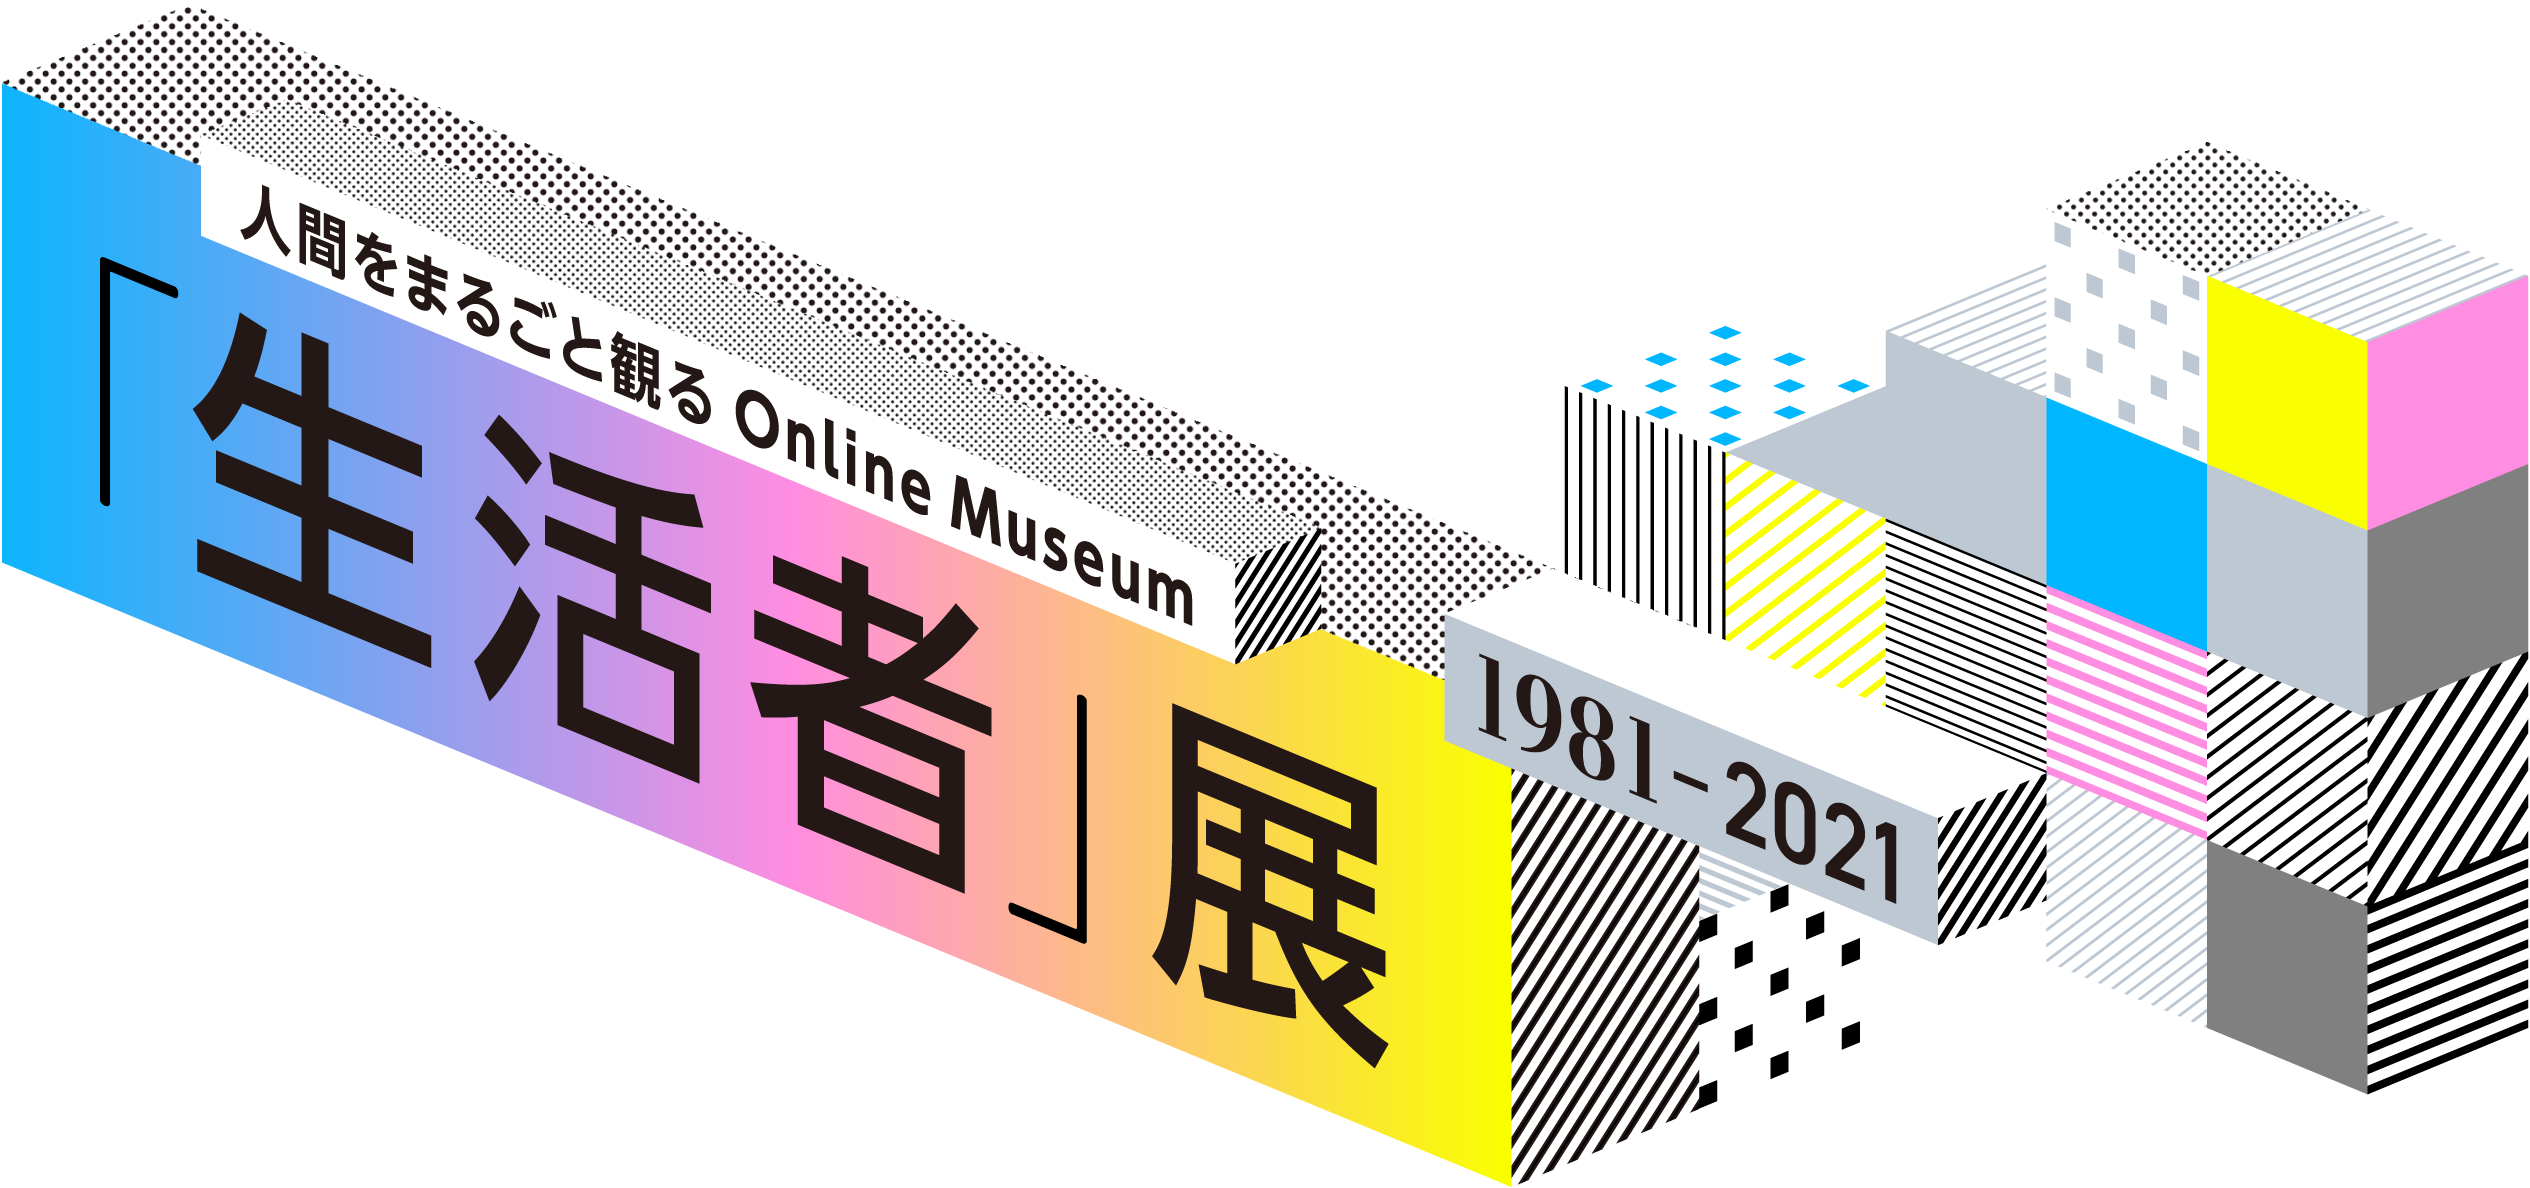 人間まるごと観る Online Museum 「生活者」展 1981-2021